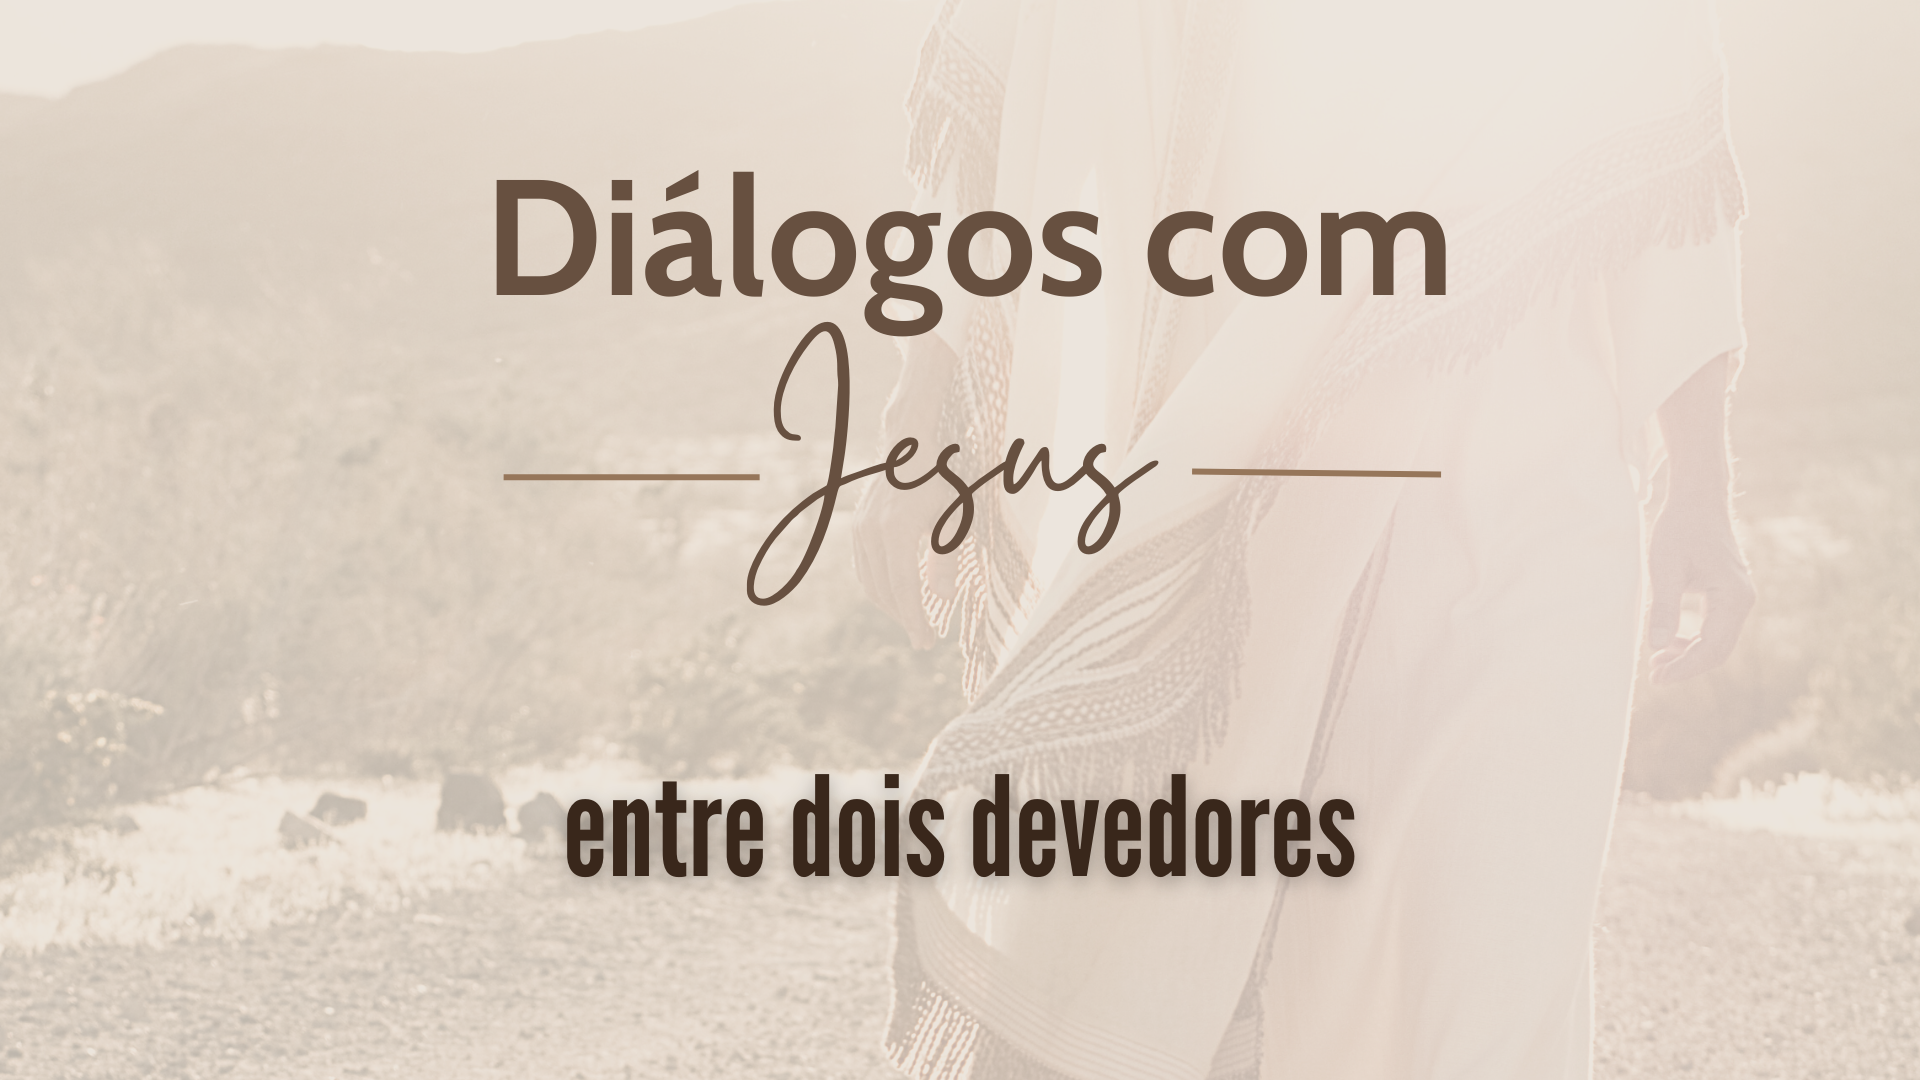 As possibilidades de diálogo com o mundo evangélico